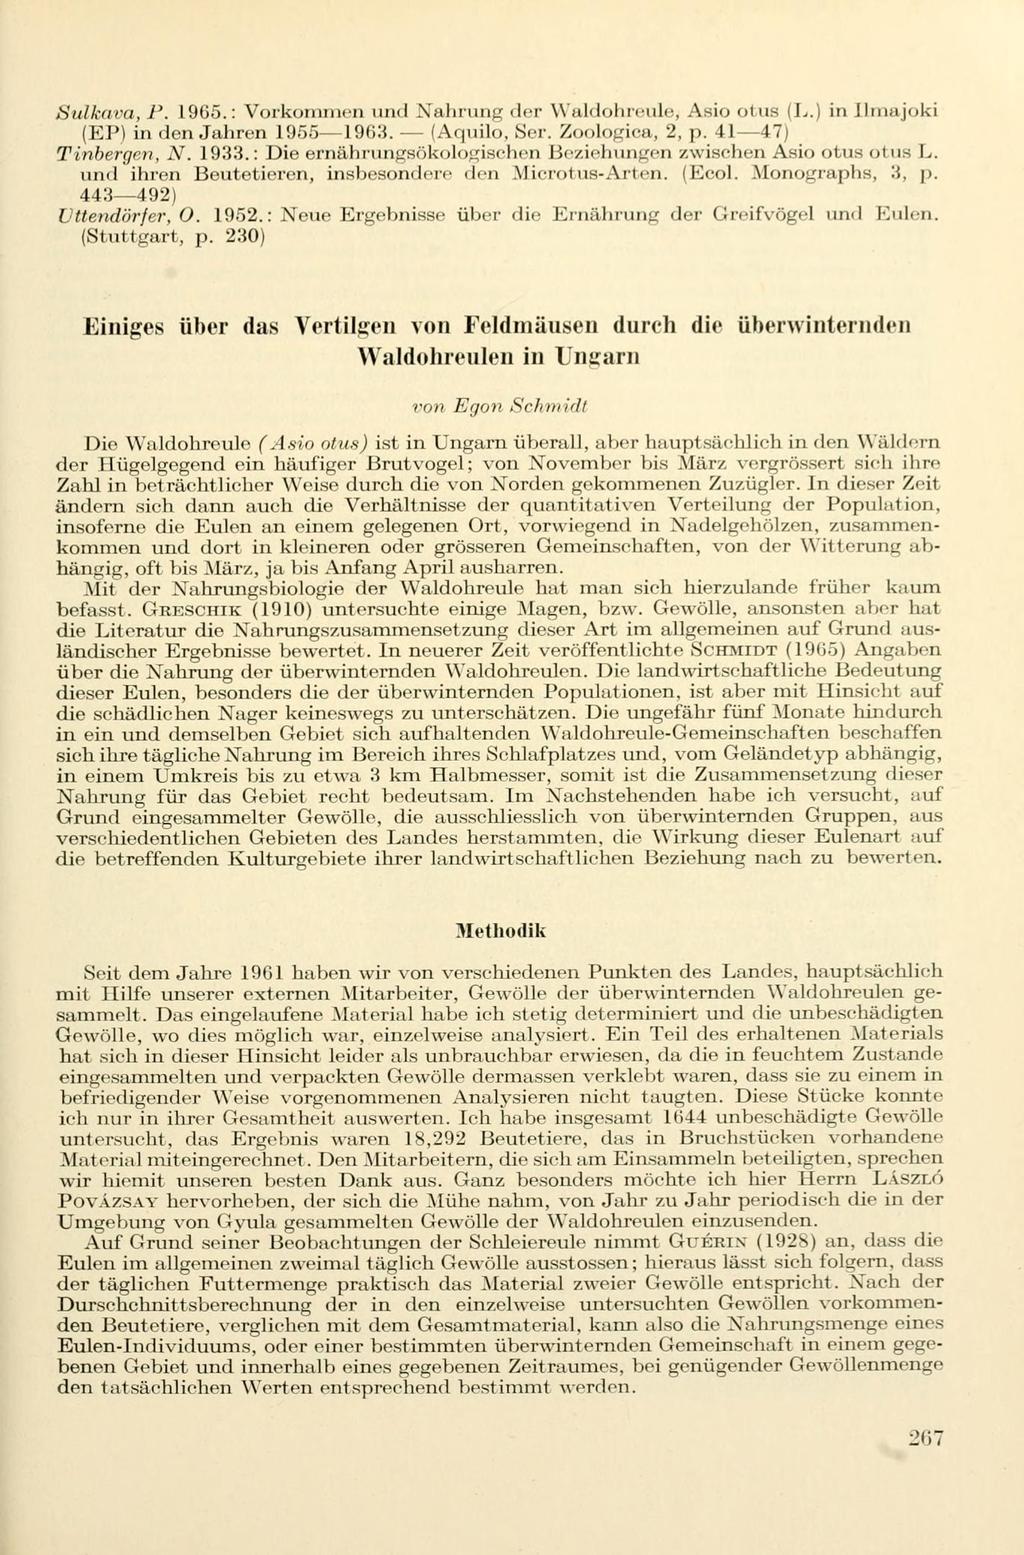 Siilkoni, /'. Ulli").: Vorkommen und Nahrung der Waldohreule, Asio otus il.) in Ilmajoki (EP) in den Jahren 1955 19(13. (Aquilo, Ser. Zoologica, 2, p. 41 47) Tinbergen, N. 1933.